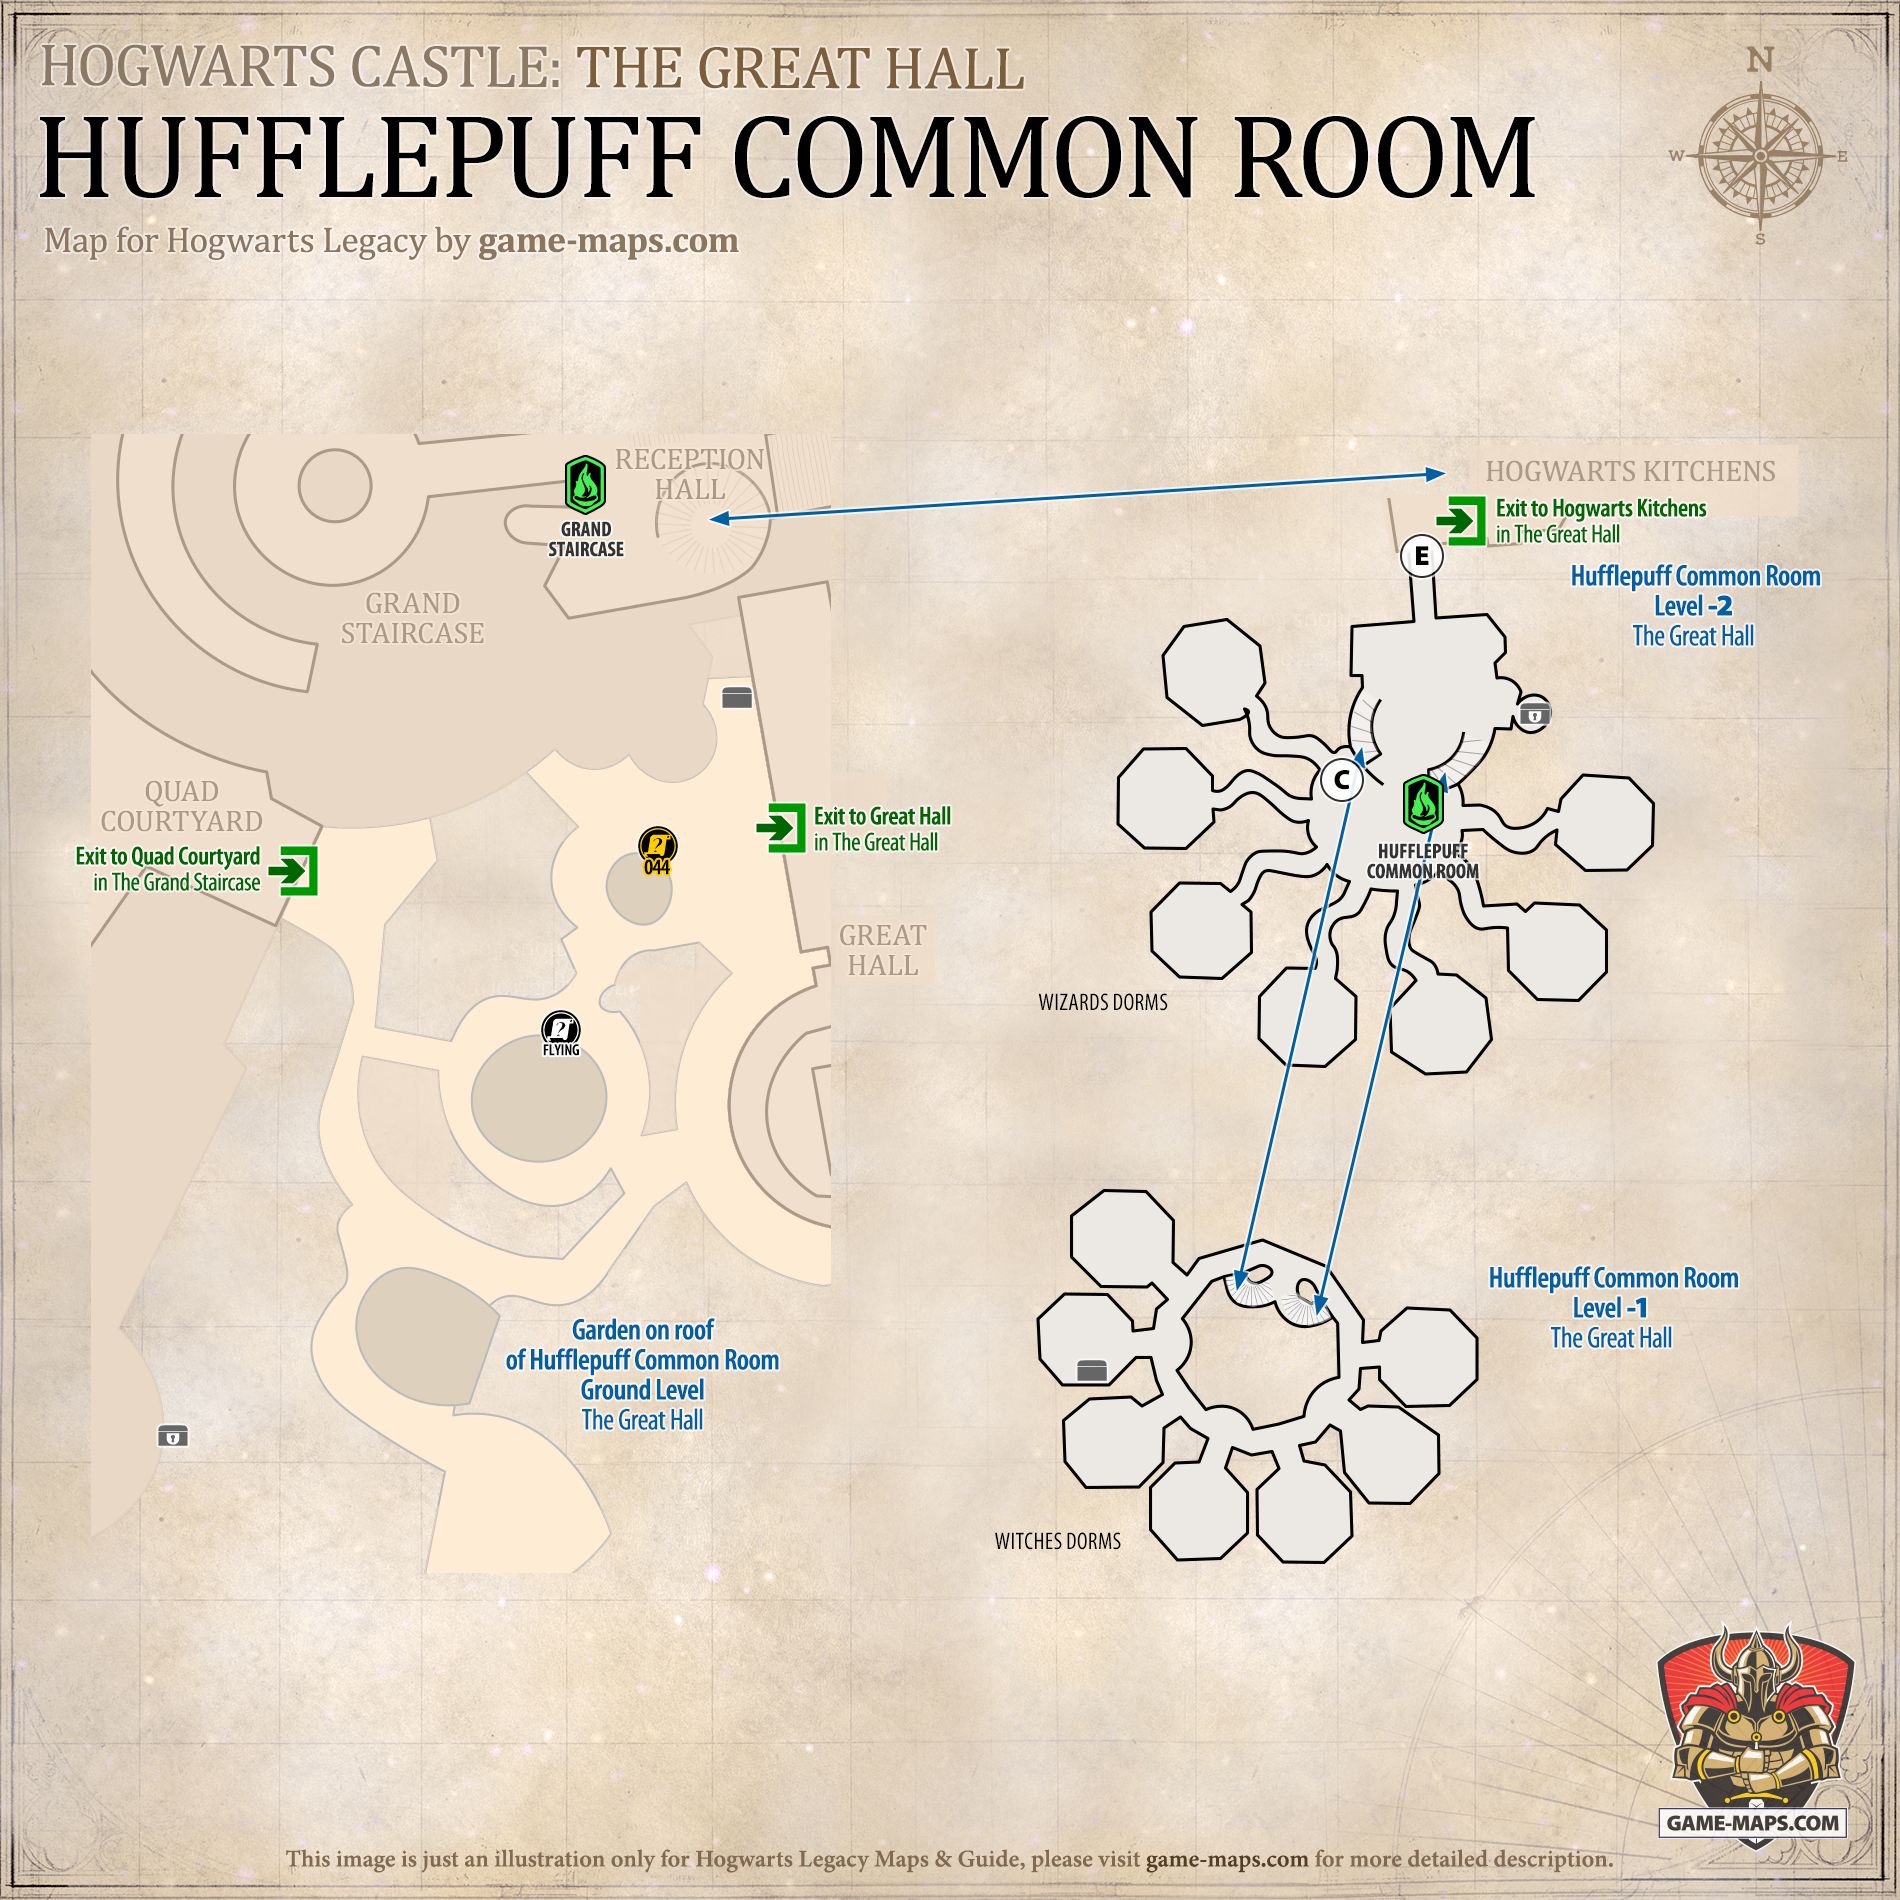 Hufflepuff Közös szobatérkép a Roxfort örökségéhez